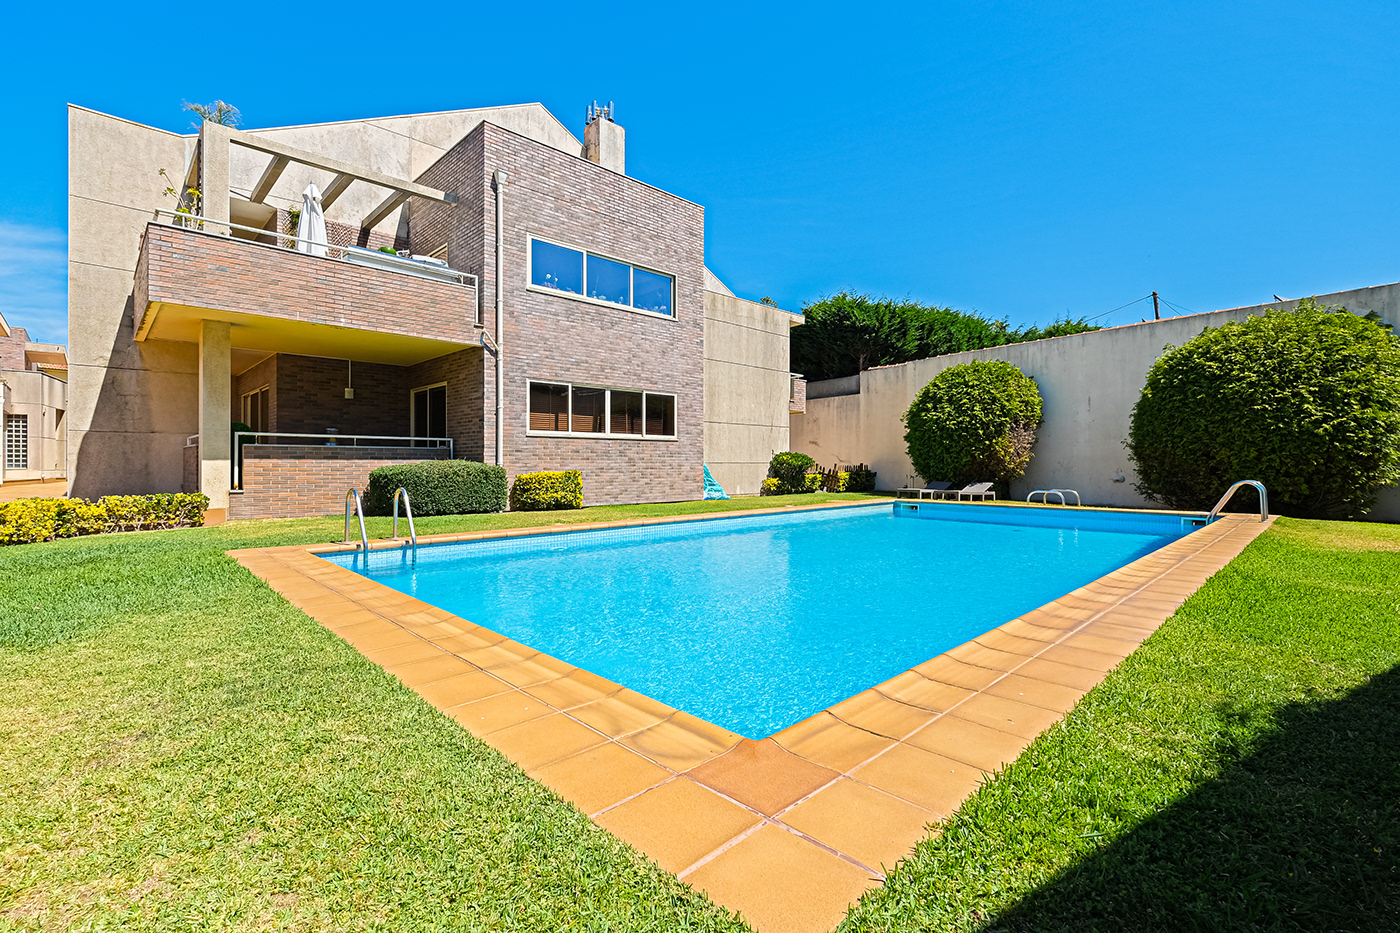 real estate imobiliária imobiliário fotografia de imóveis fotografia de imobiliário jardim piscinas CASAS exteriores